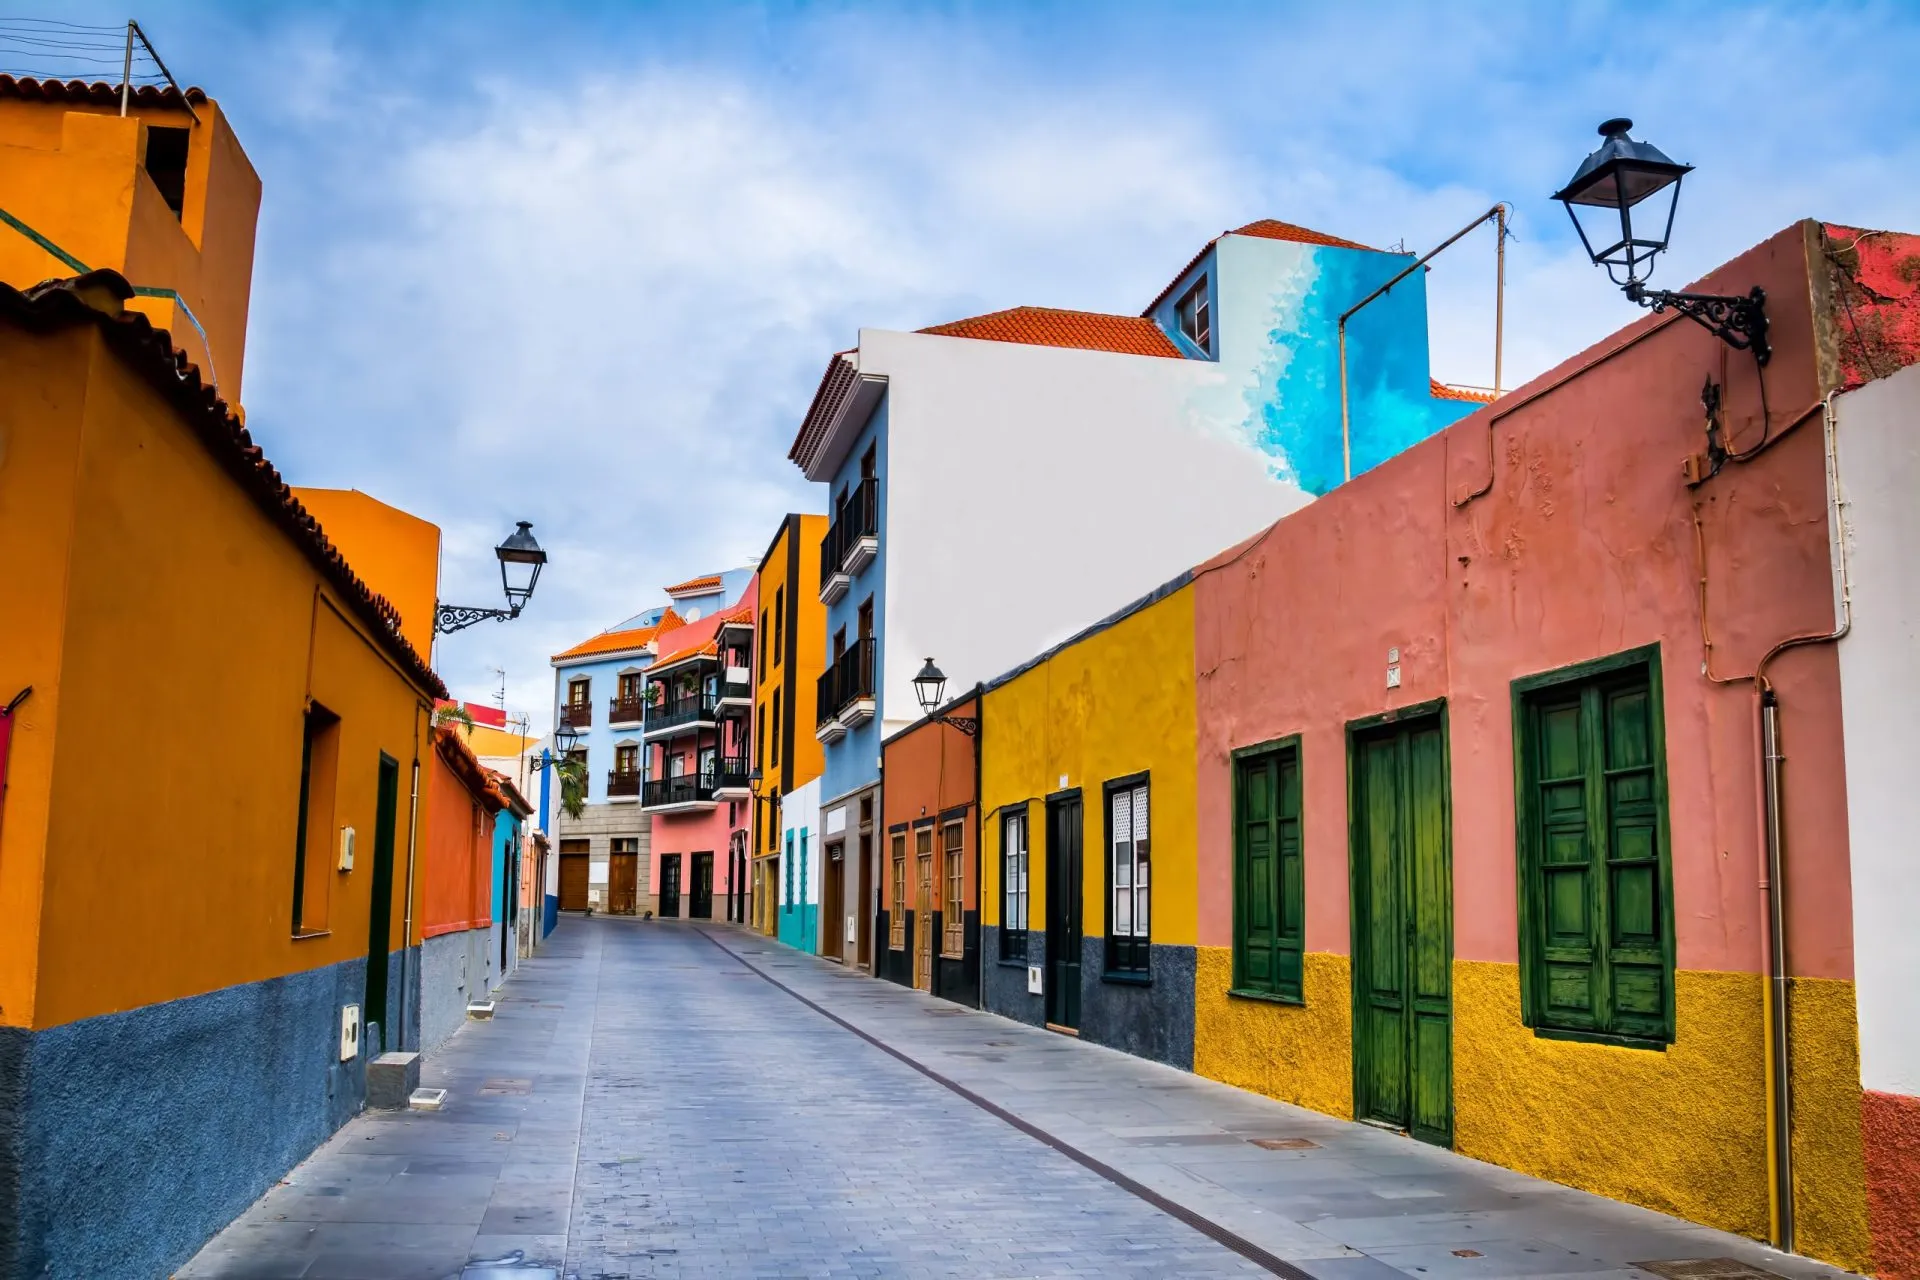 Fargerike hus i en gate i Puerto de la Cruz, Tenerife, Kanariøyene, Spania. Dette er en gågate med mange restauranter og butikker nær havet.